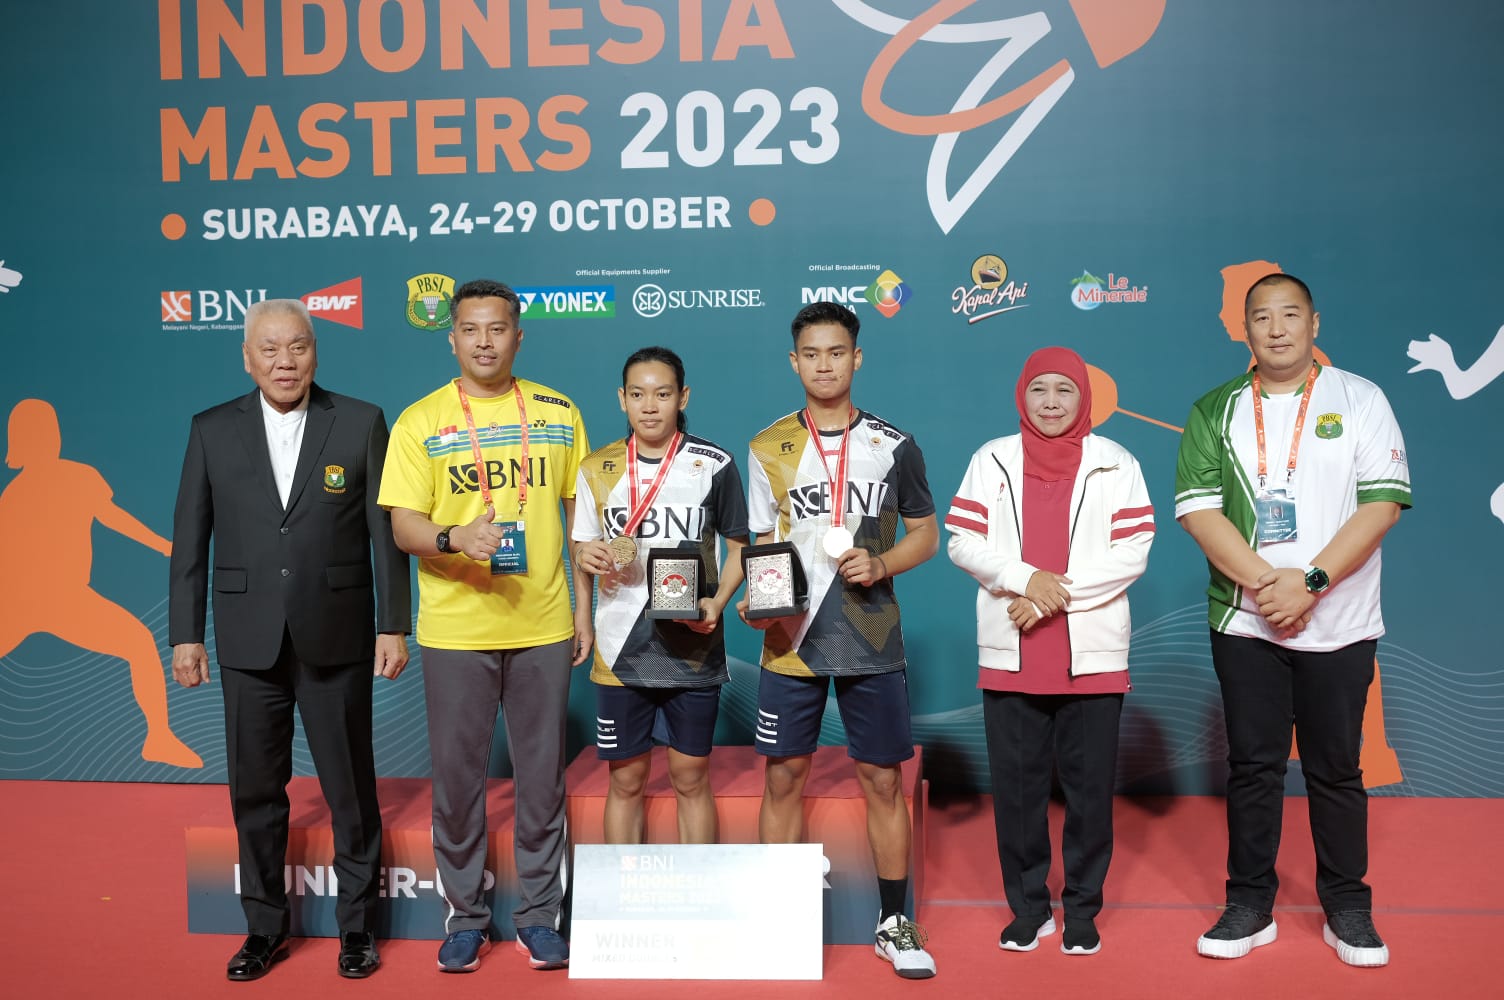 Lanny/Ribka Sugiarto Juara Indonesia Masters, Gubernur dan Ketum PBSI Jatim Bangga 